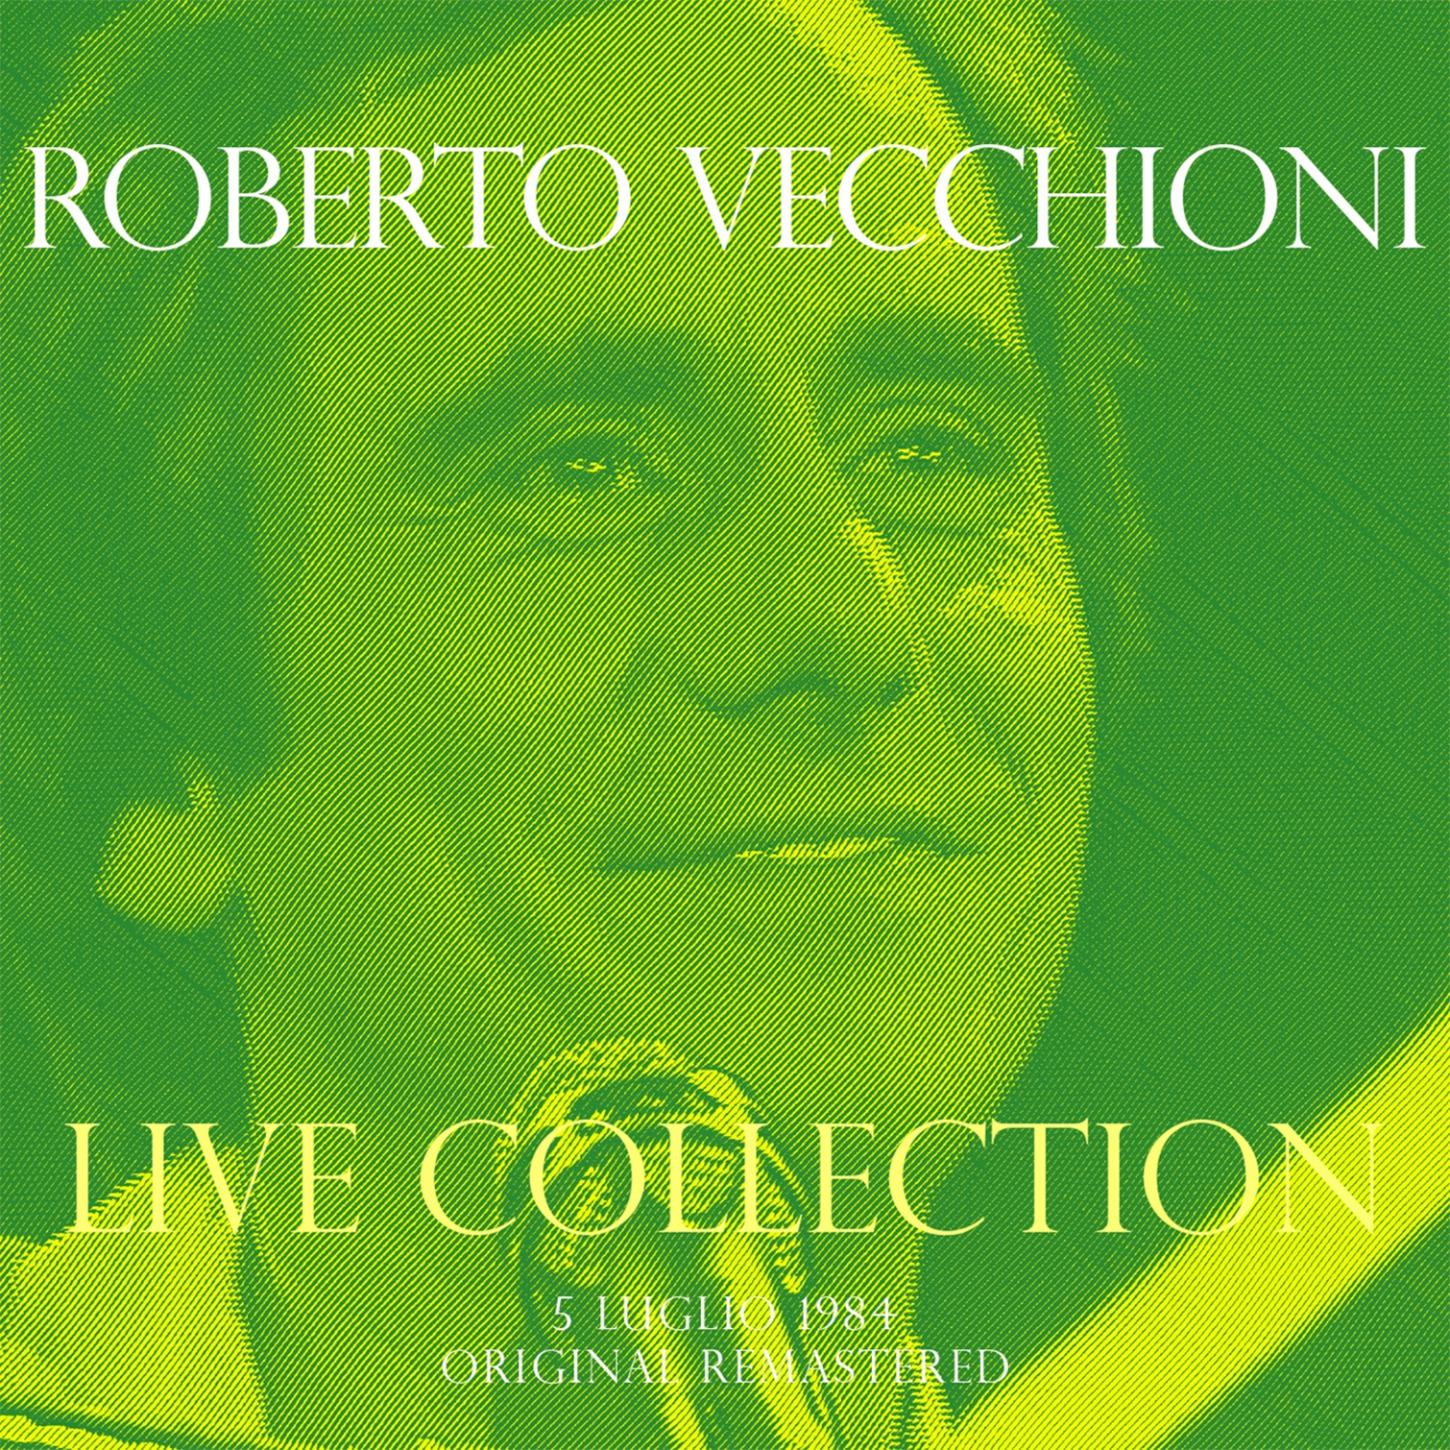 Roberto Vecchioni - Canzone Per Sergio (Live 5 Luglio 1984)